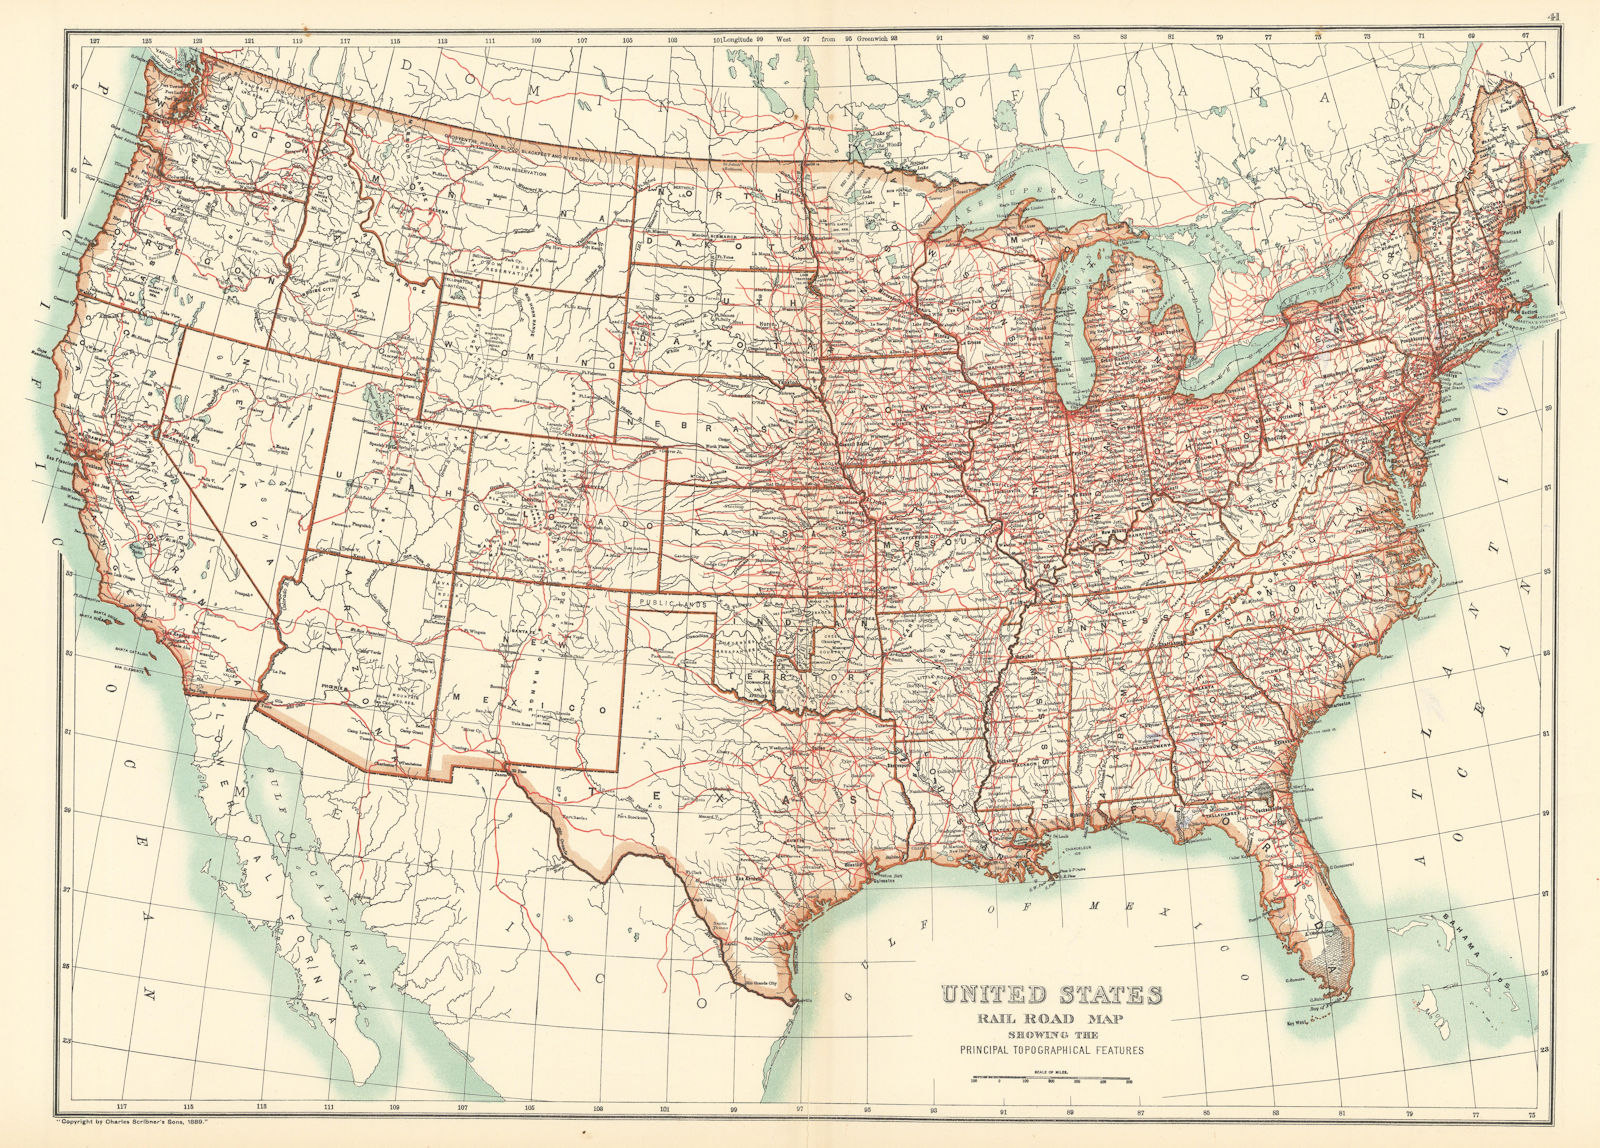 United States of America. USA Railways & rivers. BARTHOLOMEW 1898 old map